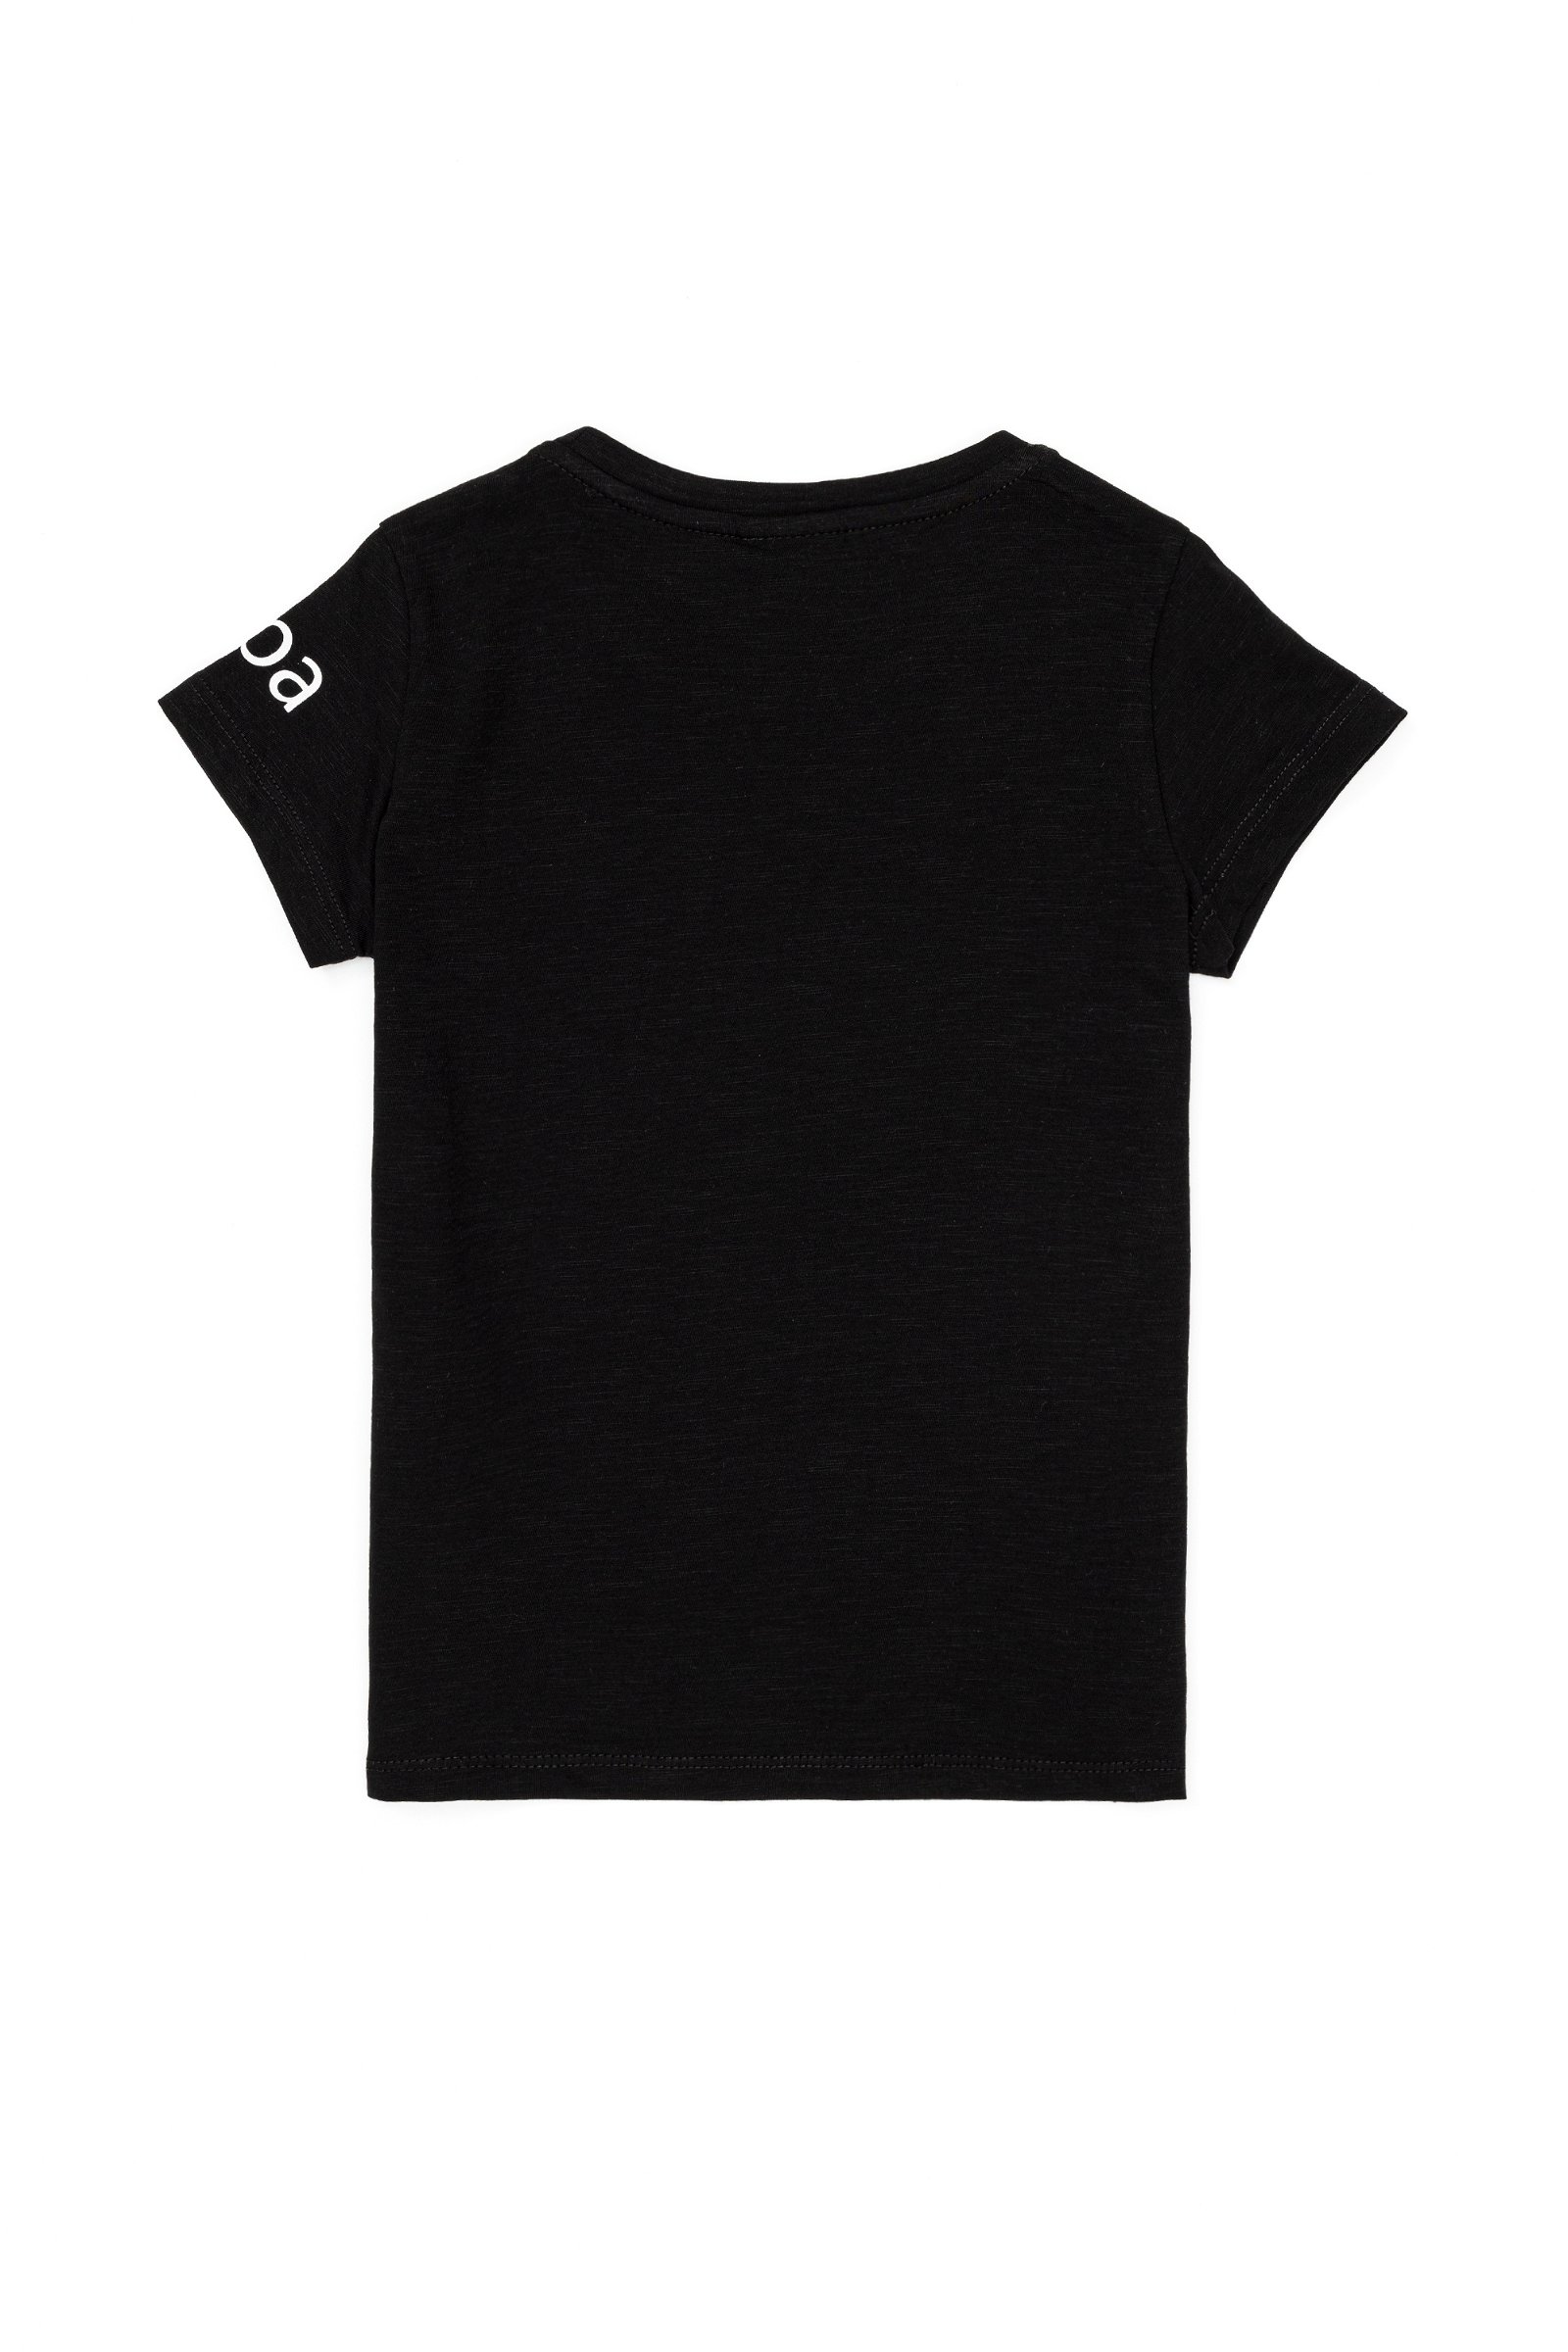 تی شرت  سیاه  استاندارد فیت  دخترانه یو اس پولو